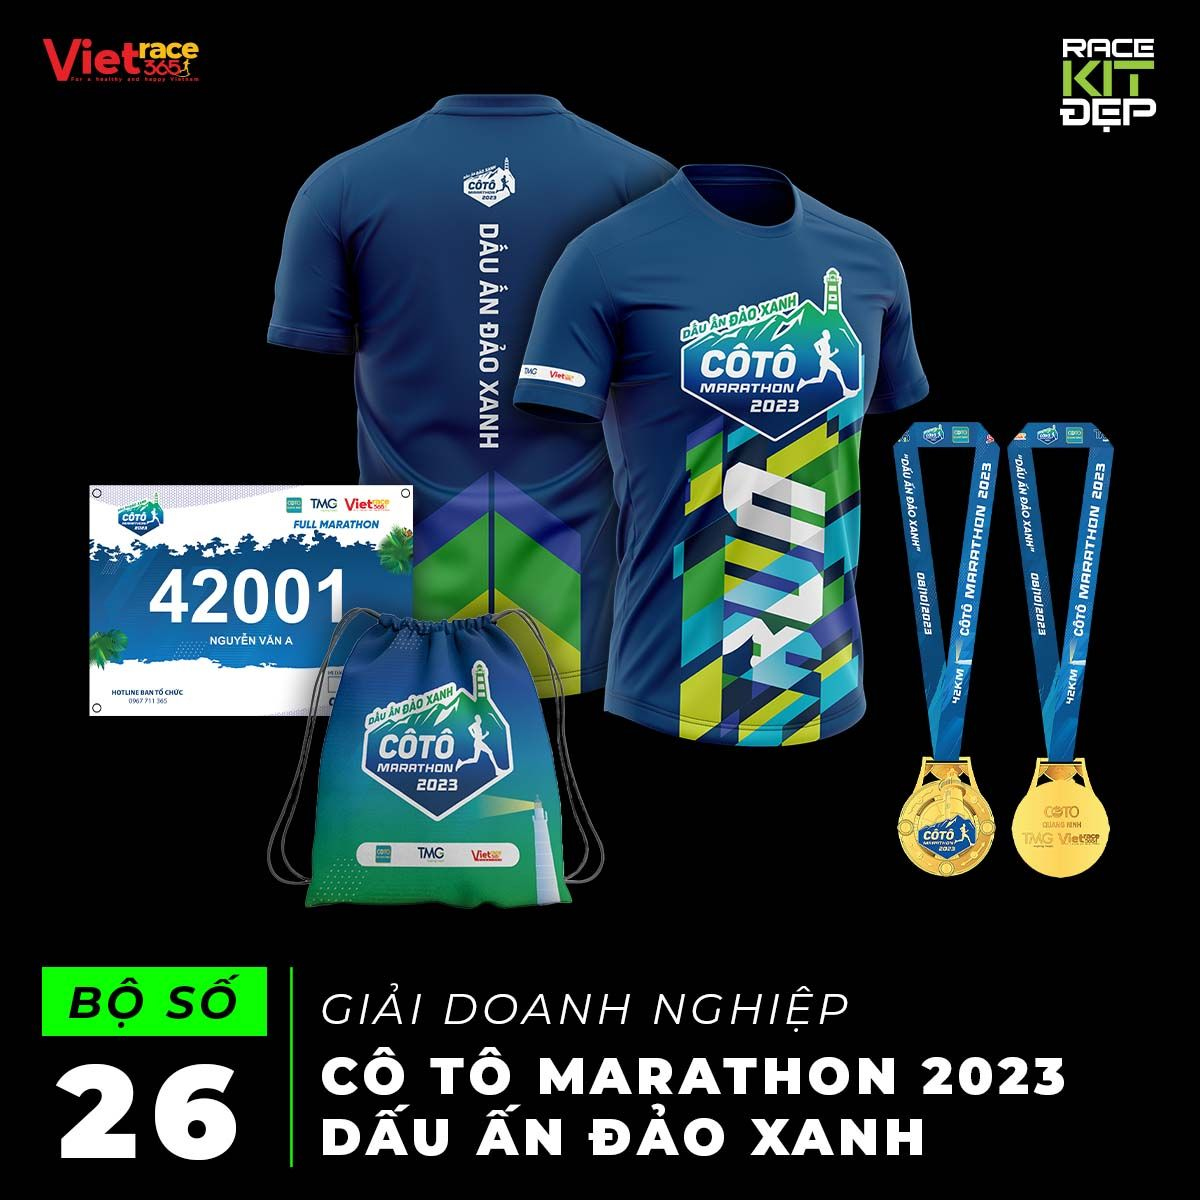 Cô Tô Marathon 2023